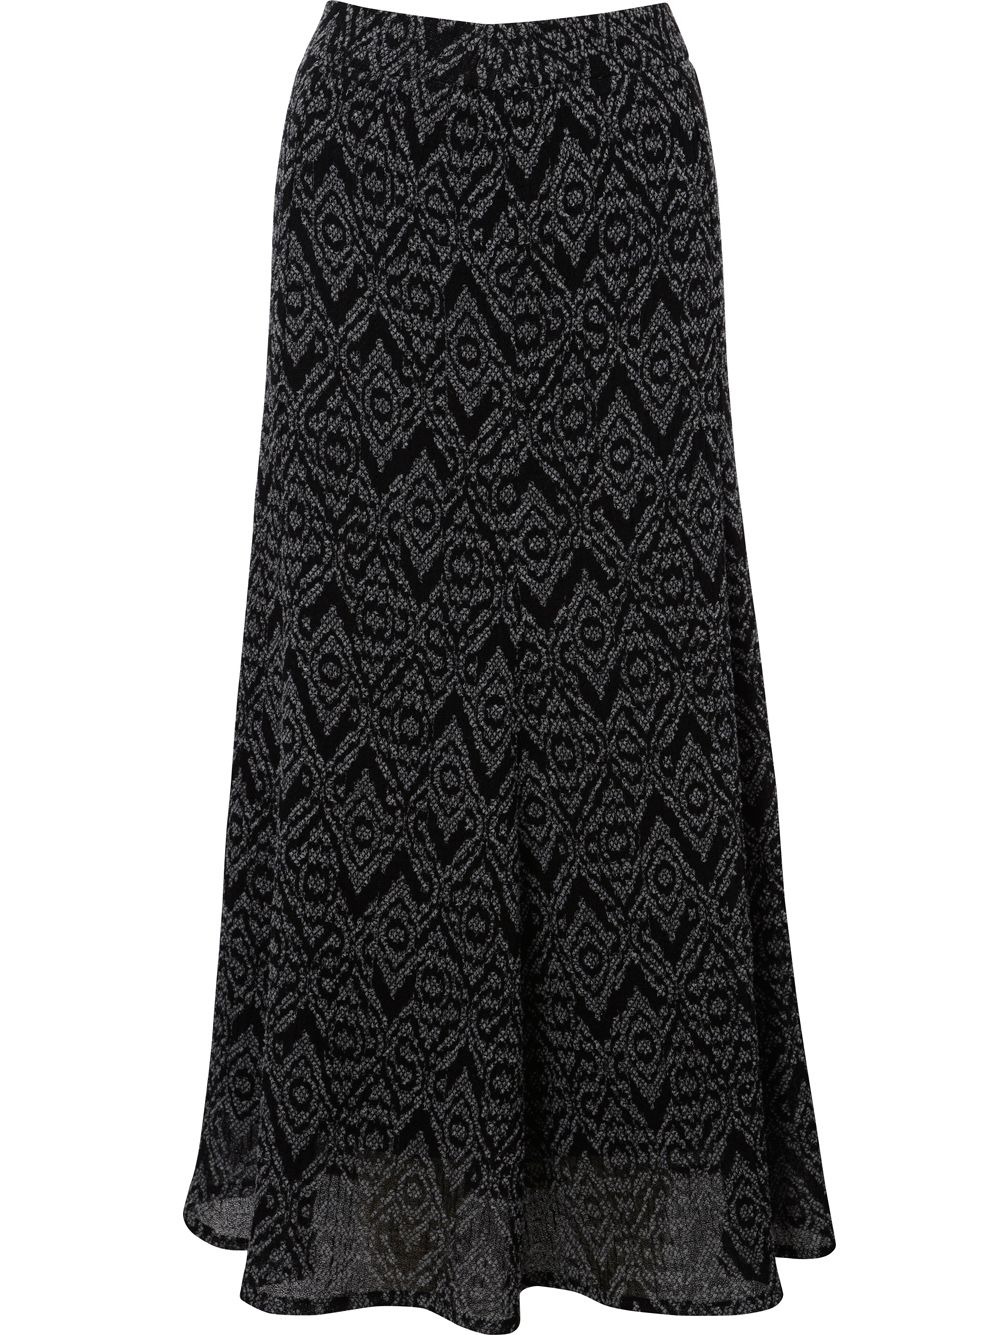 Viyella Diamond Jacquard Skirt, Grey at John Lewis